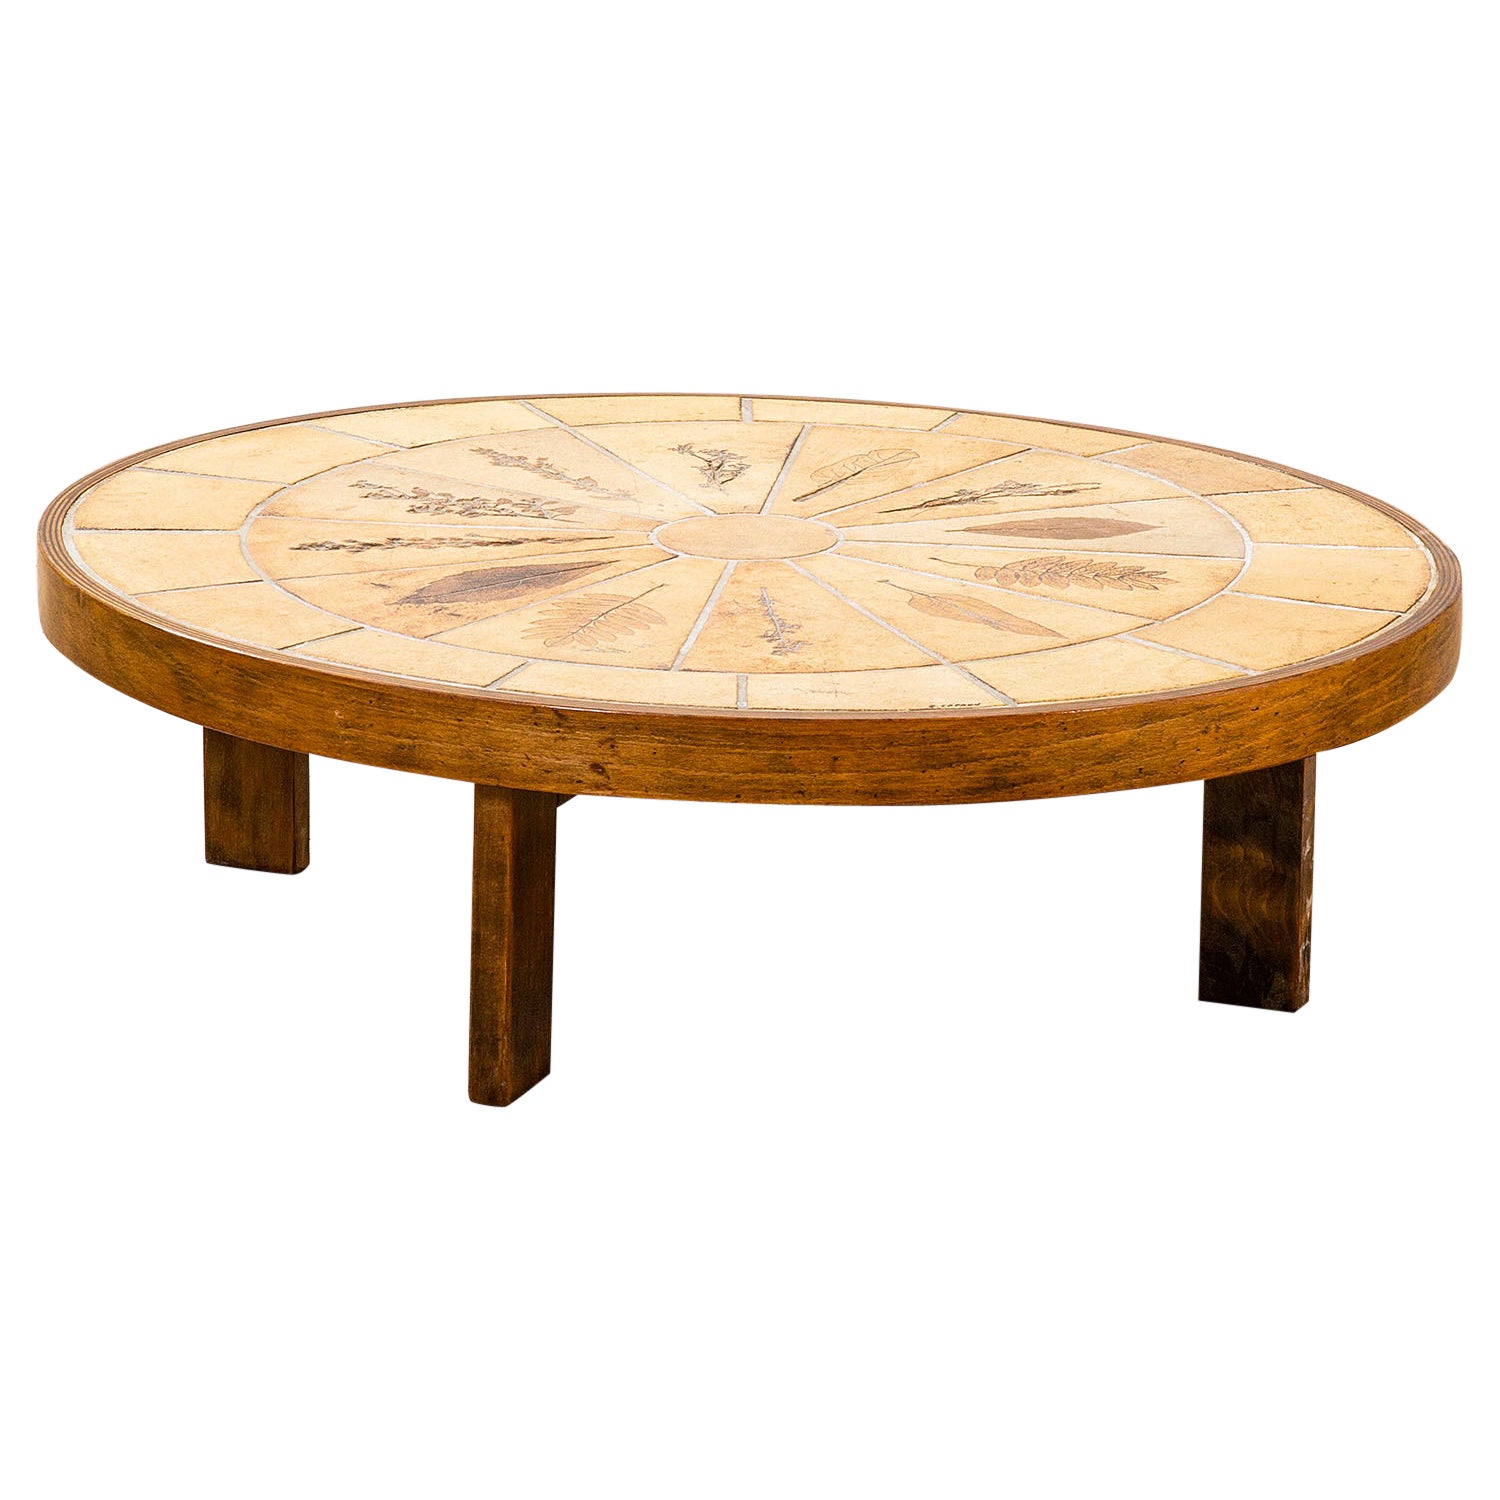 20. Jahrhundert Roger Capron niedriger Tisch mod. Pomone aus Holz und Keramik, 70er Jahre